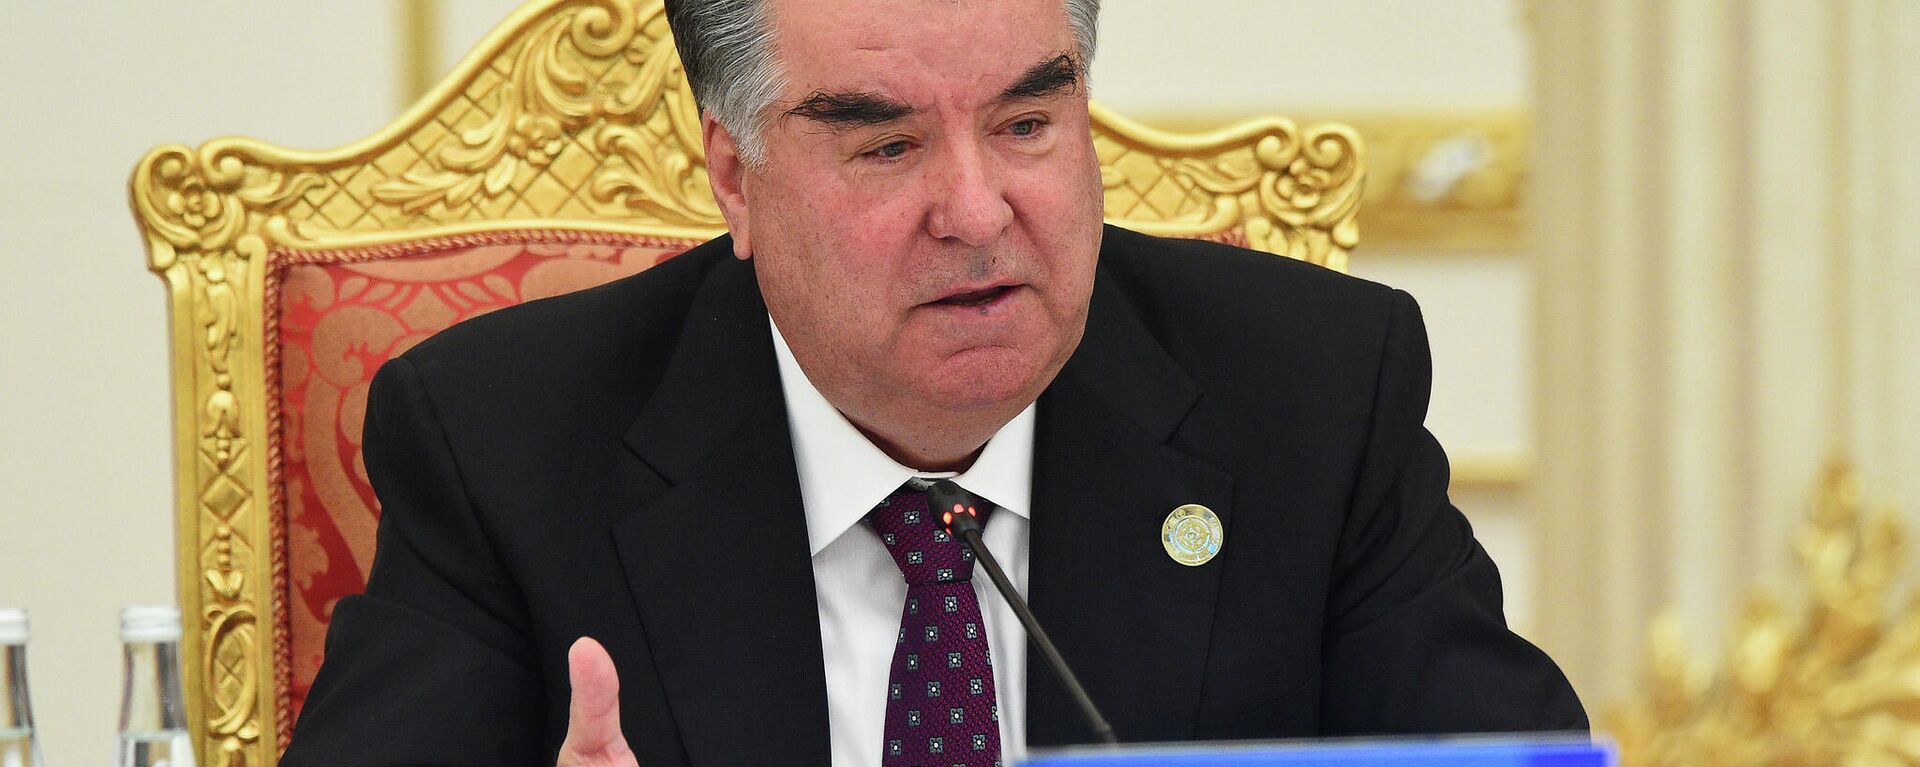 Президент Таджикистана Эмомали Рахмон - Sputnik Тоҷикистон, 1920, 16.09.2021